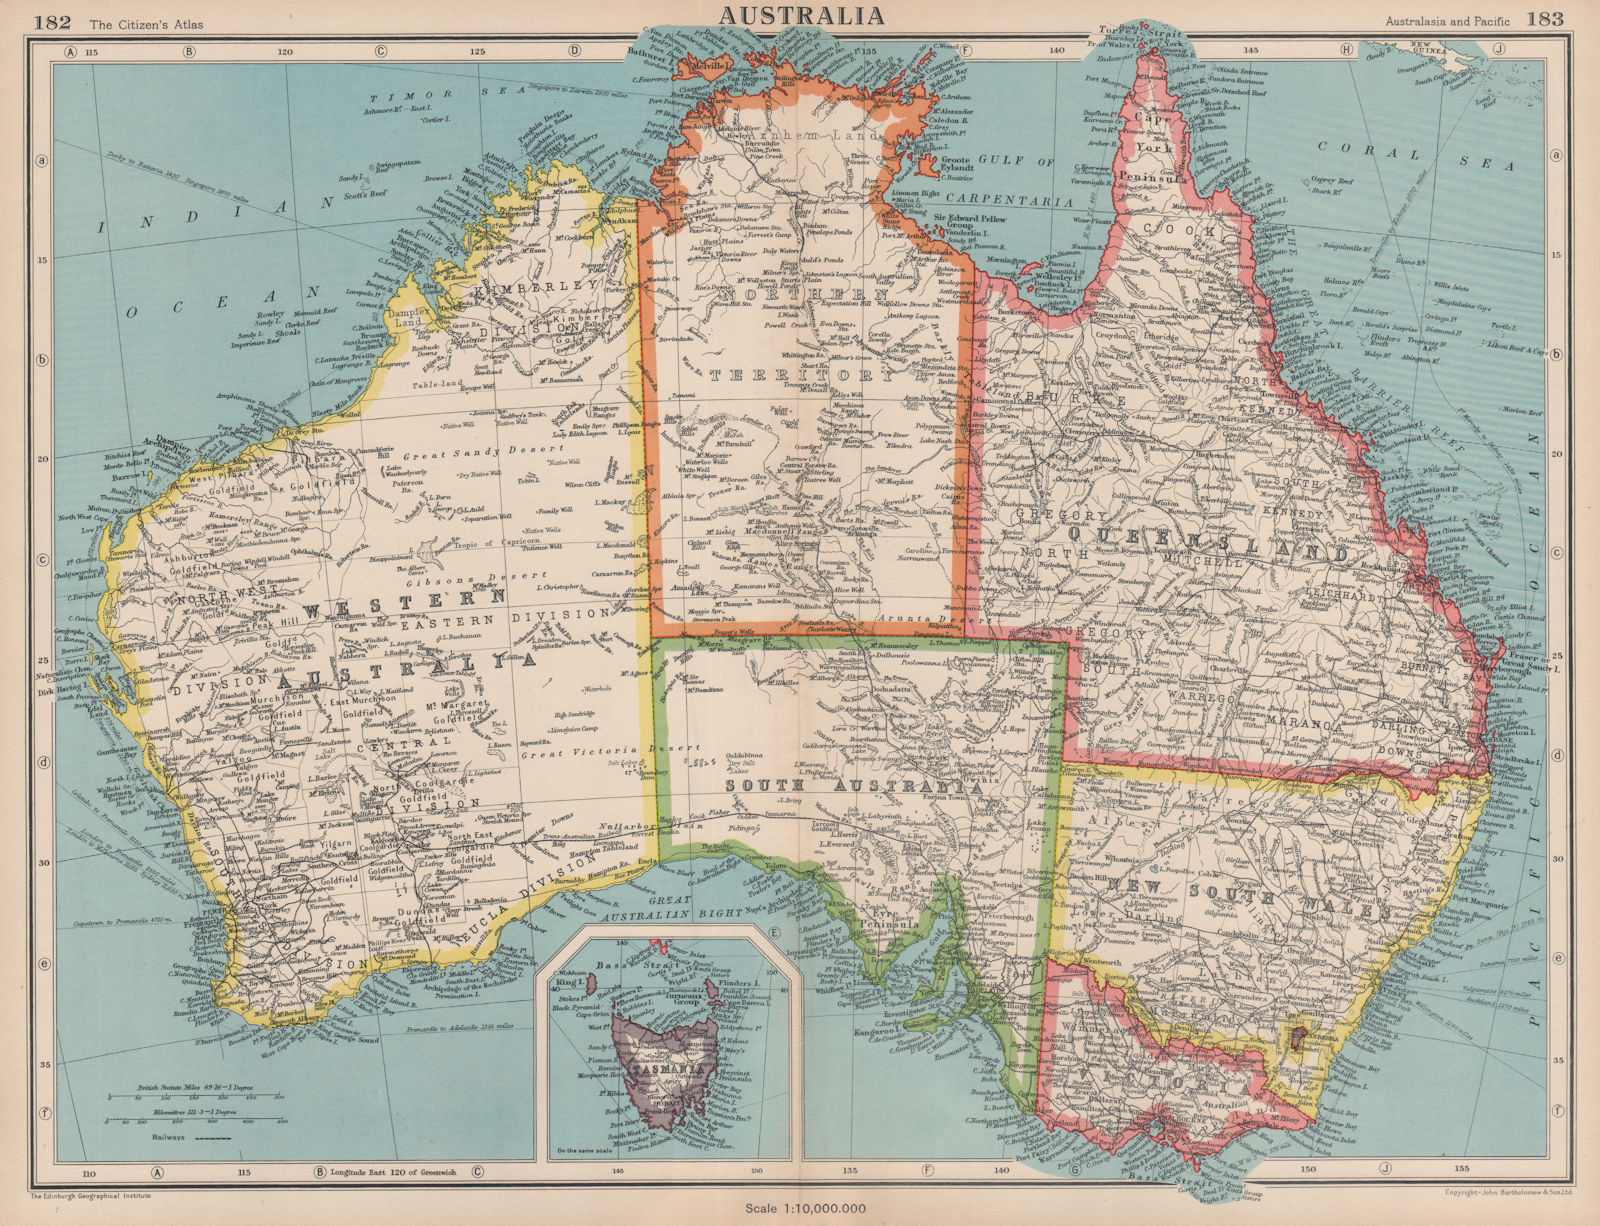 AUSTRALIA. Showing states and railways. BARTHOLOMEW 1944 old vintage map chart